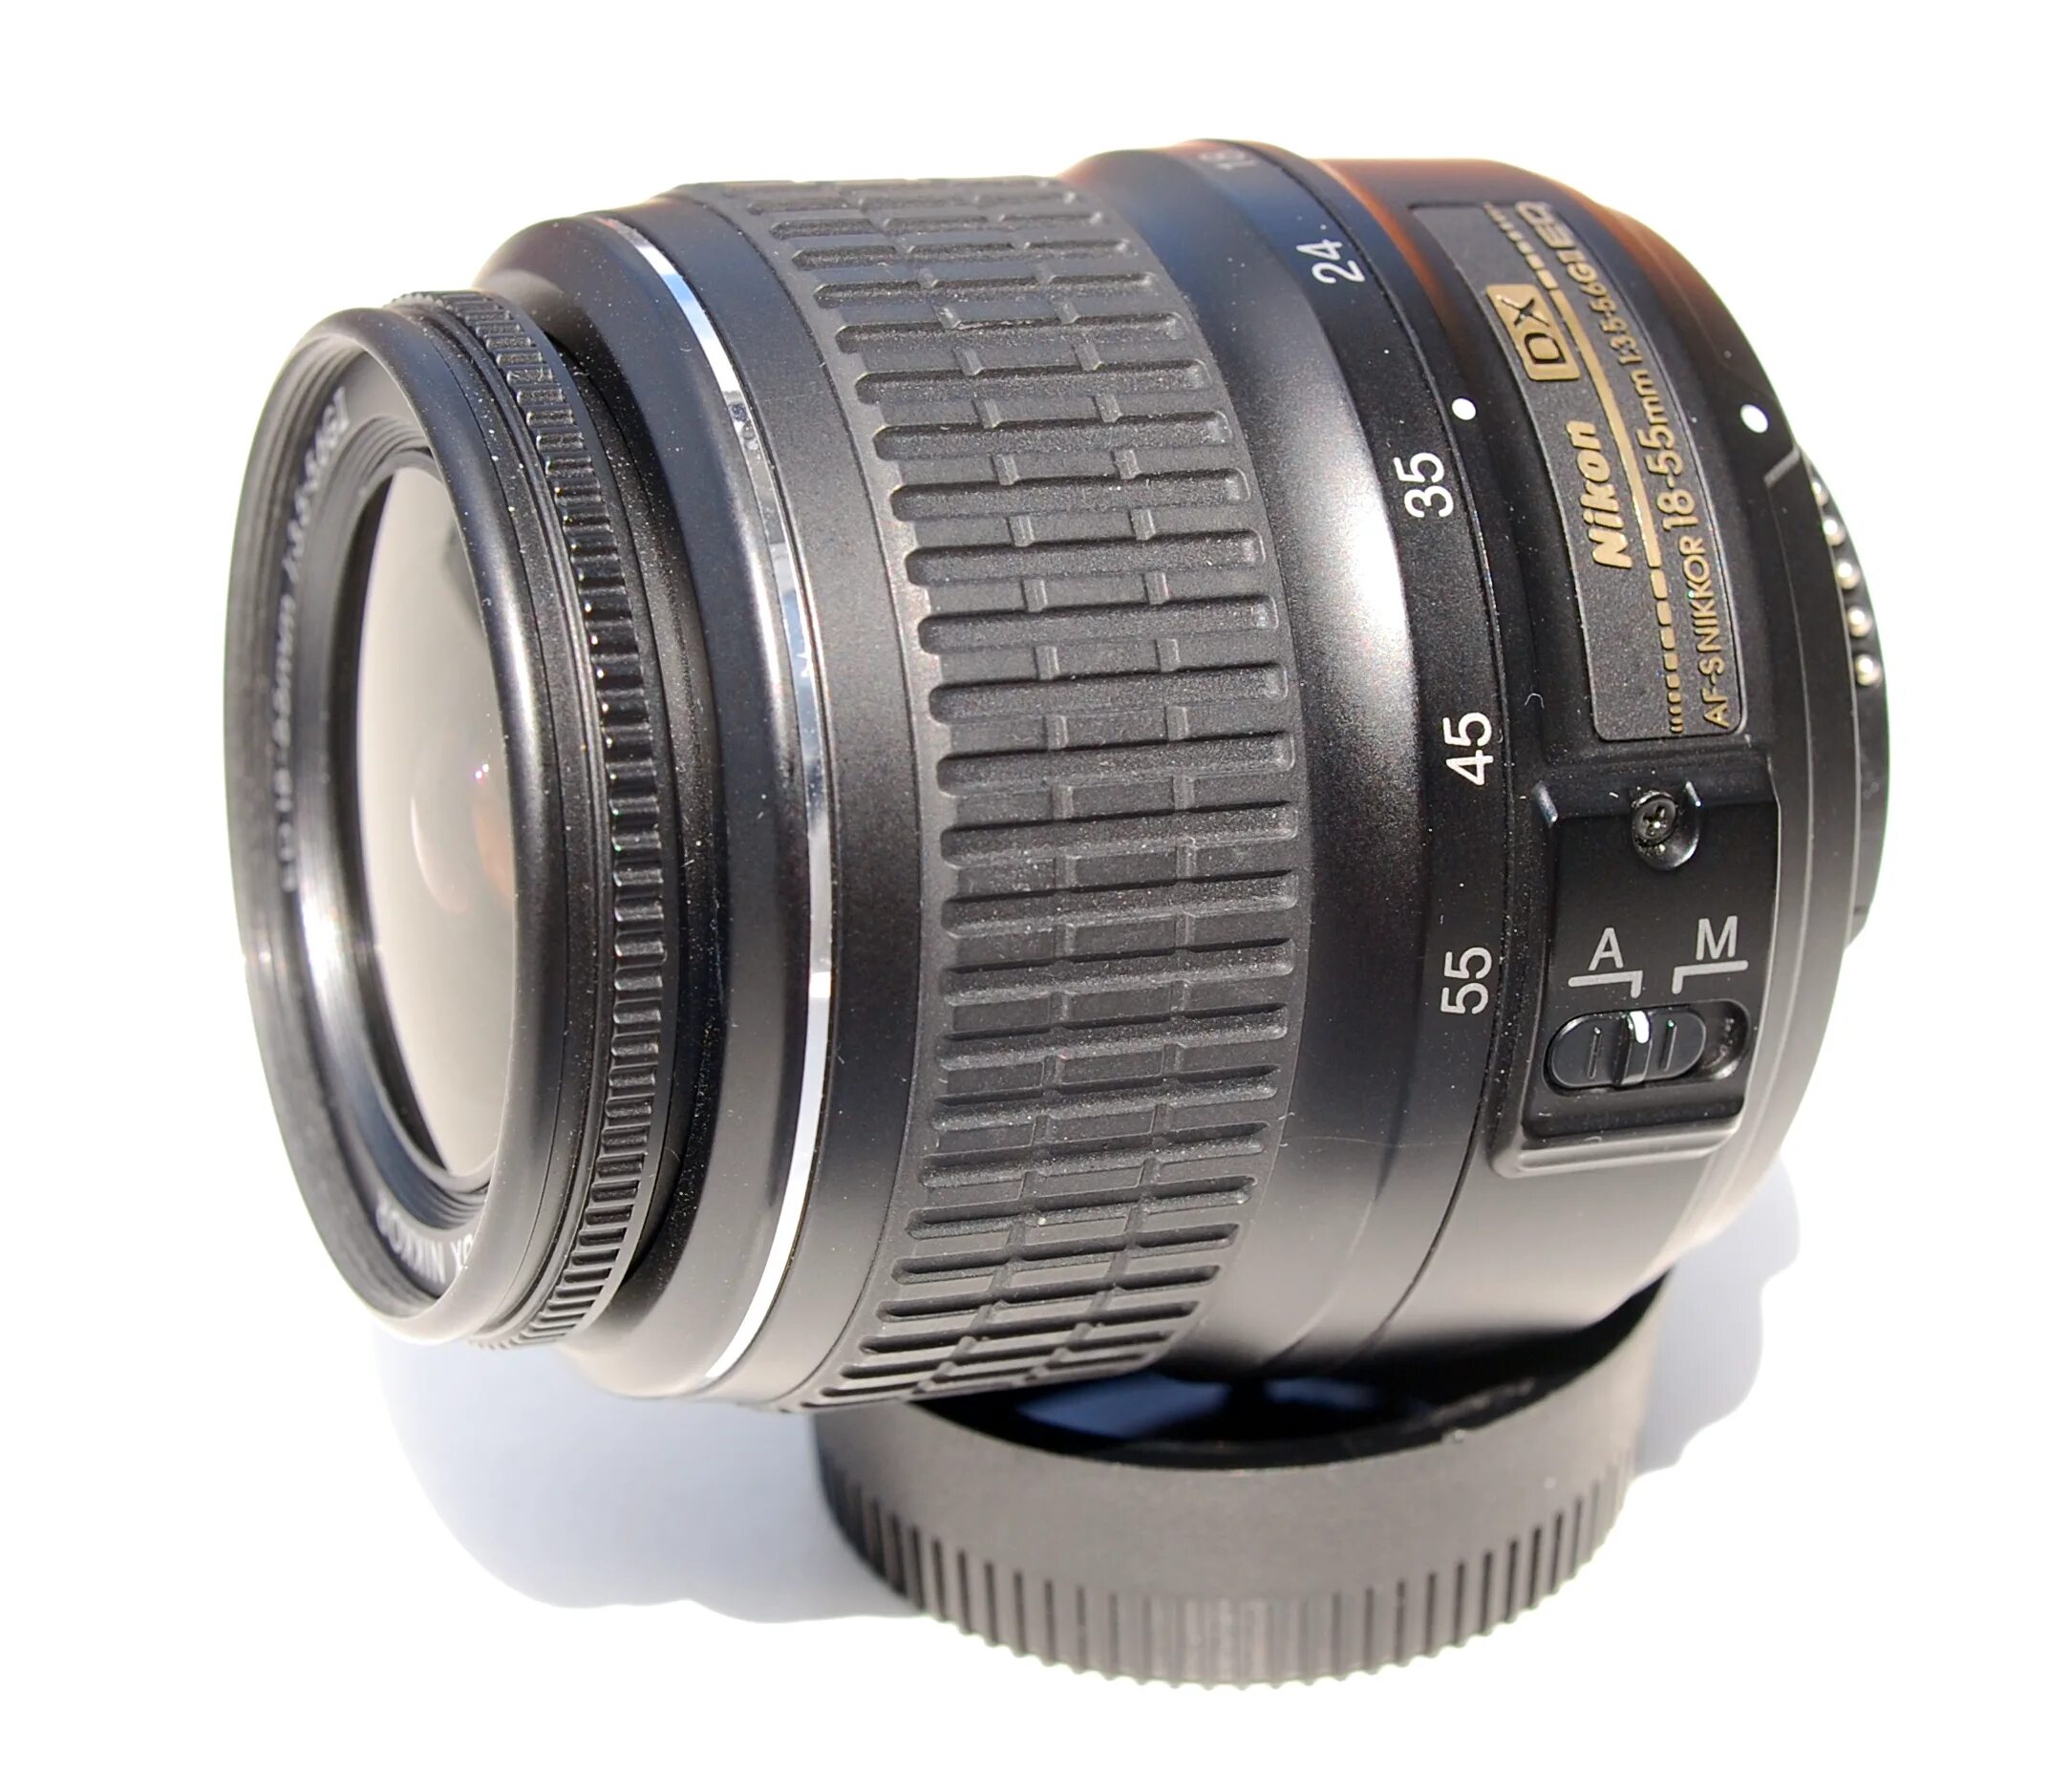 Nikon DX af s Nikkor 18 55mm. Nikon DX af-s Nikkor 18-55mm 1 3.5-5.6g. Nikon 18-55mm f/3.5-5.6g af-s VR DX. Af s 18 55mm